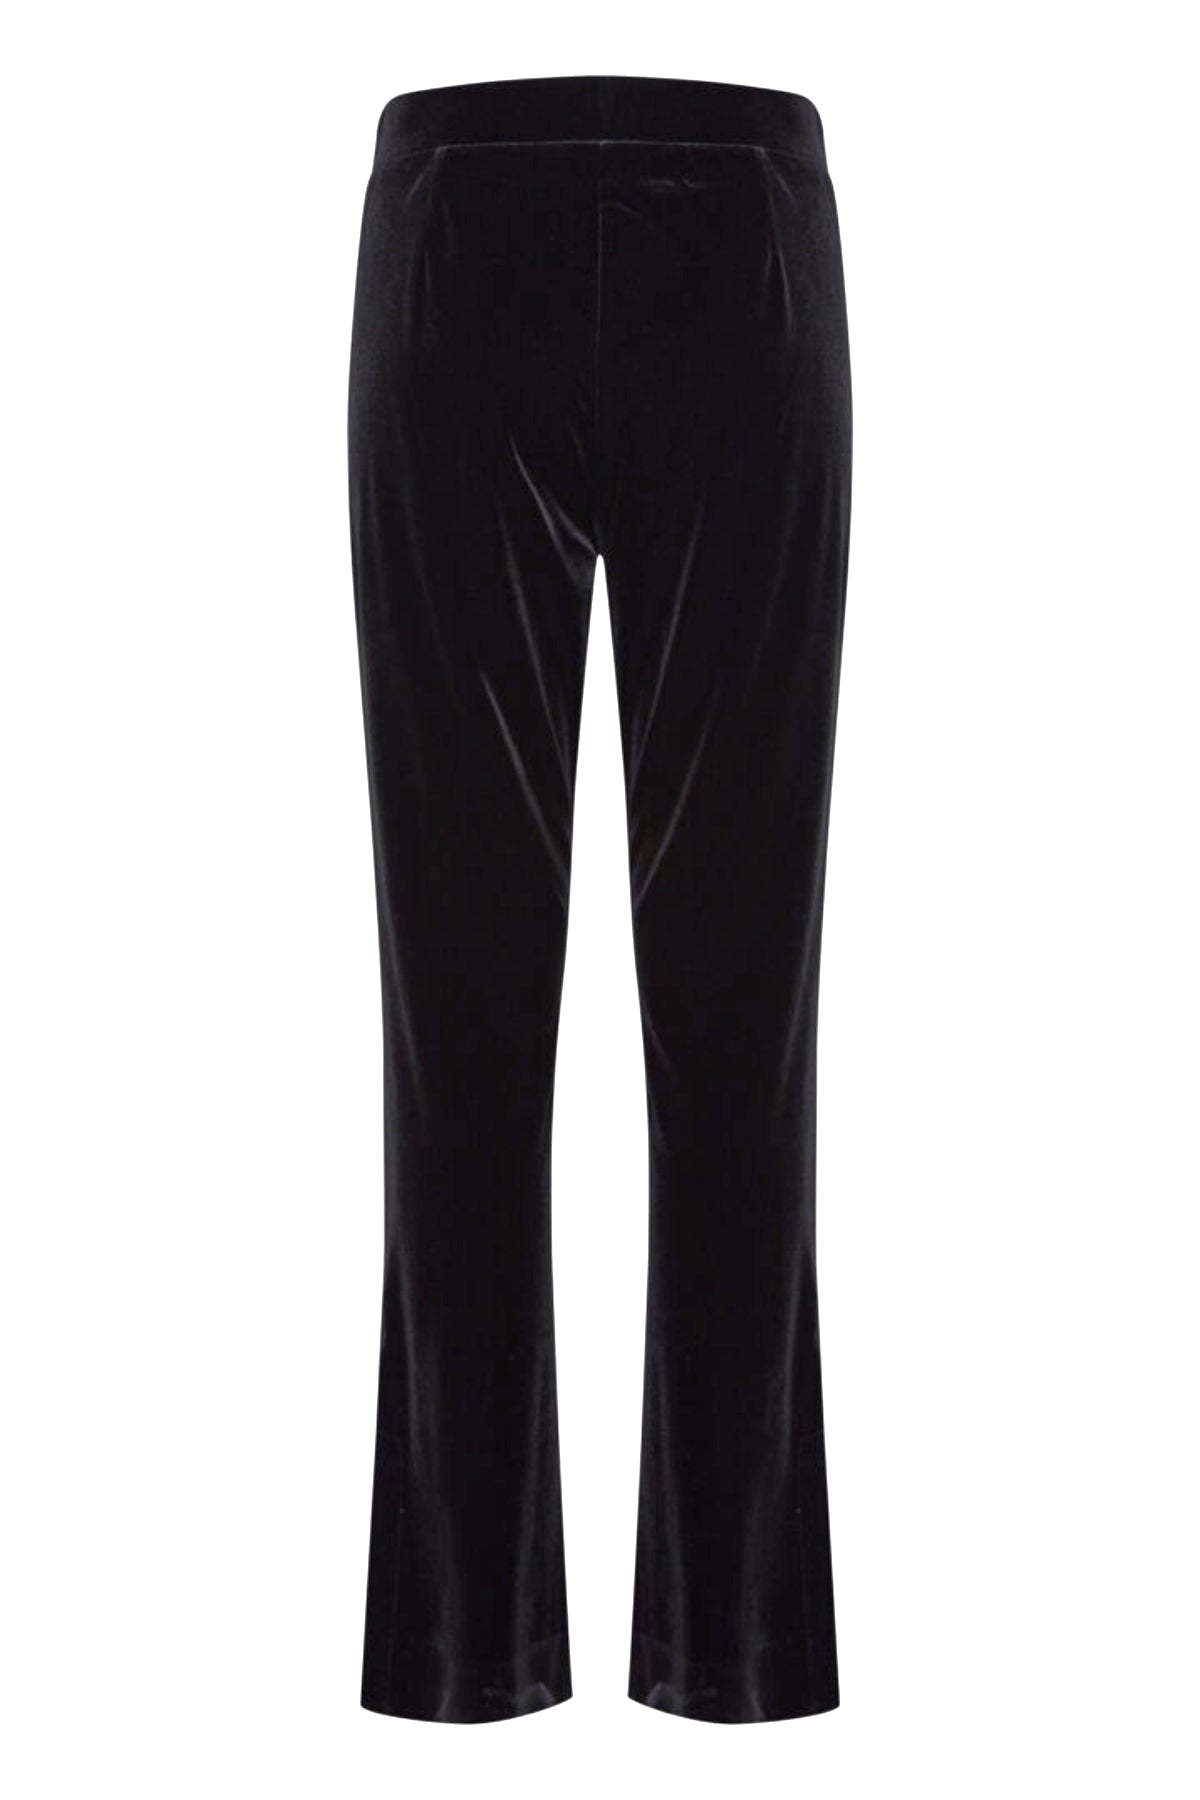 Perlina velvet trousers, black